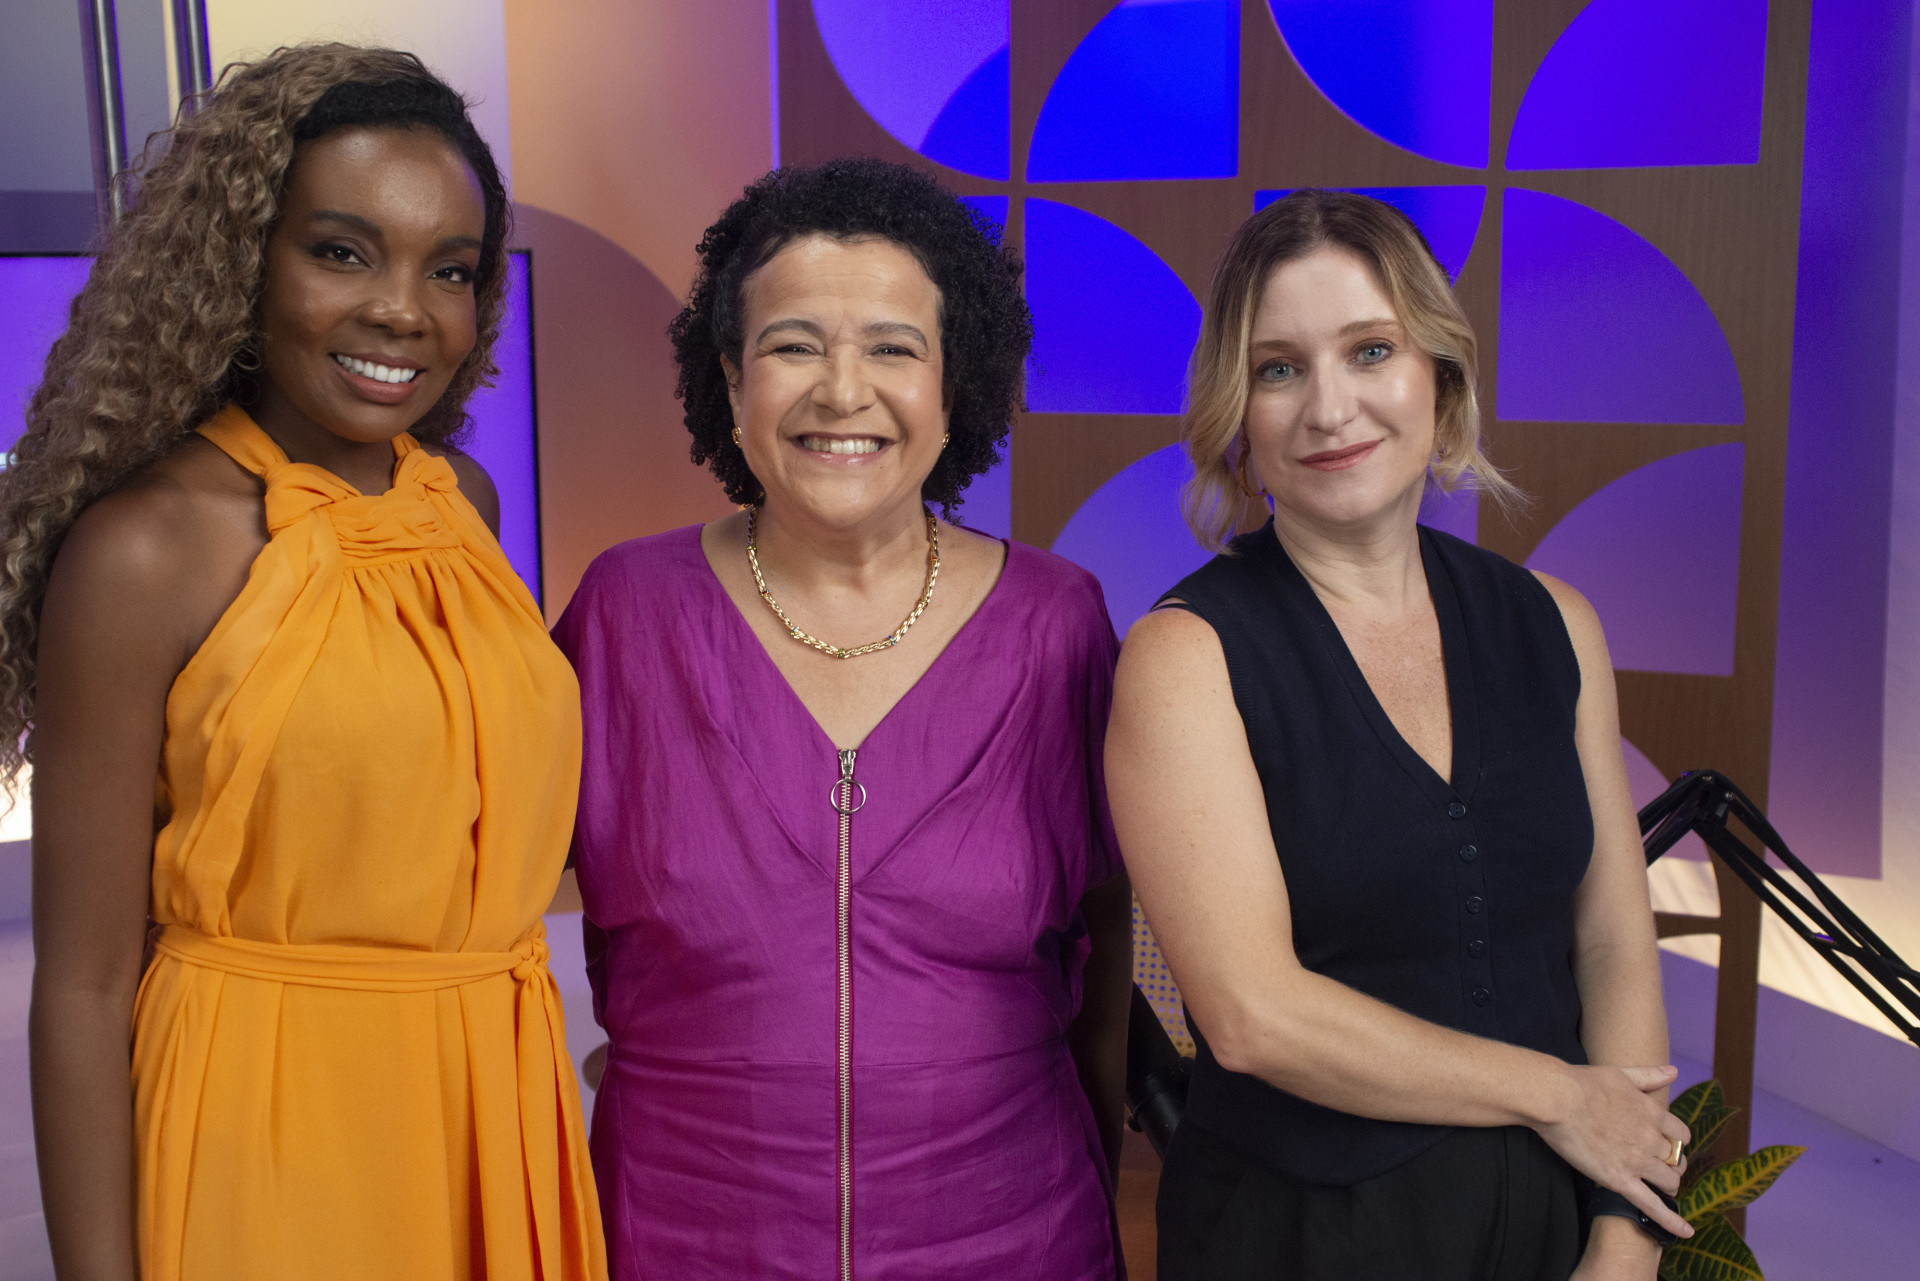 Ana Fontes, Thelminha Assis e Nana Lima discutem a “Política do Cuidado” em videocast